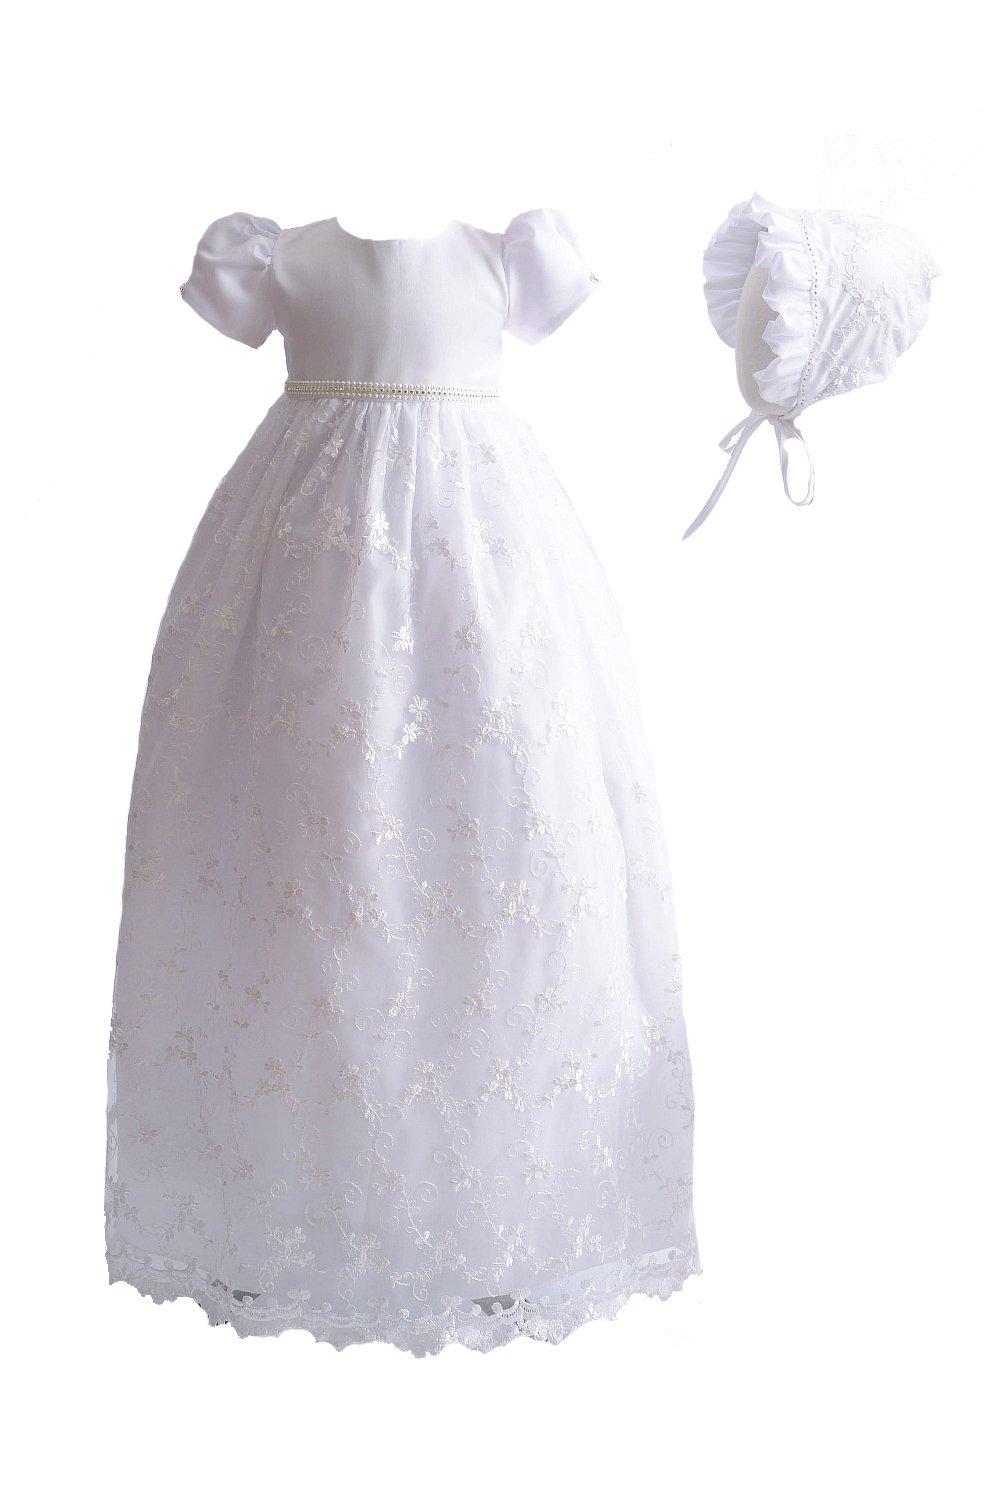 Длинное кружевное платье для крещения с чепчиком Cinda, белый платье детское кружевное длинное тюлевое для крещения с повязкой на голову белое цвета слоновой кости для маленьких девочек